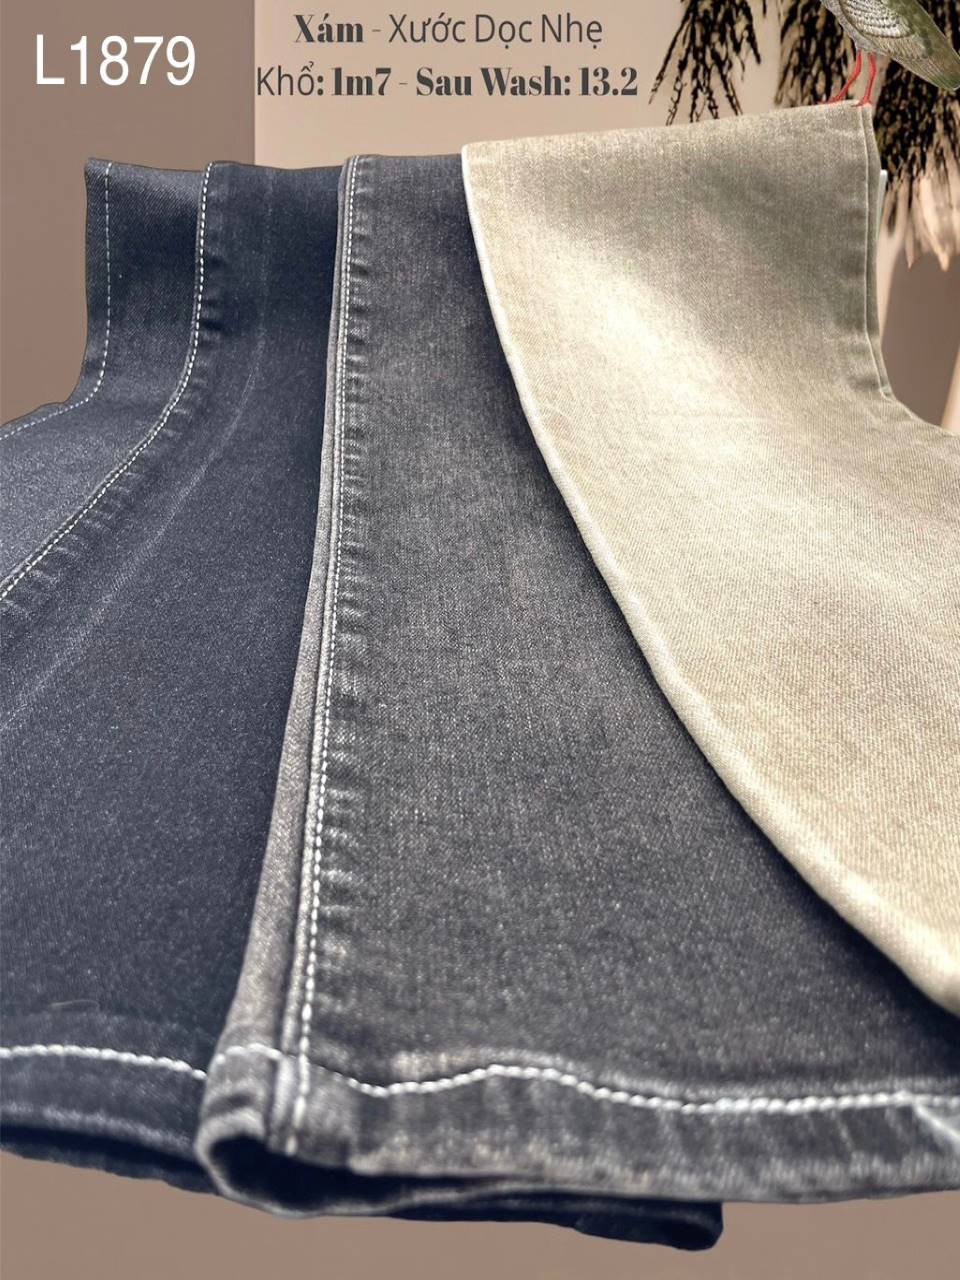 Vải jean Nam thun L1879 màu xám - xước dọc vừa